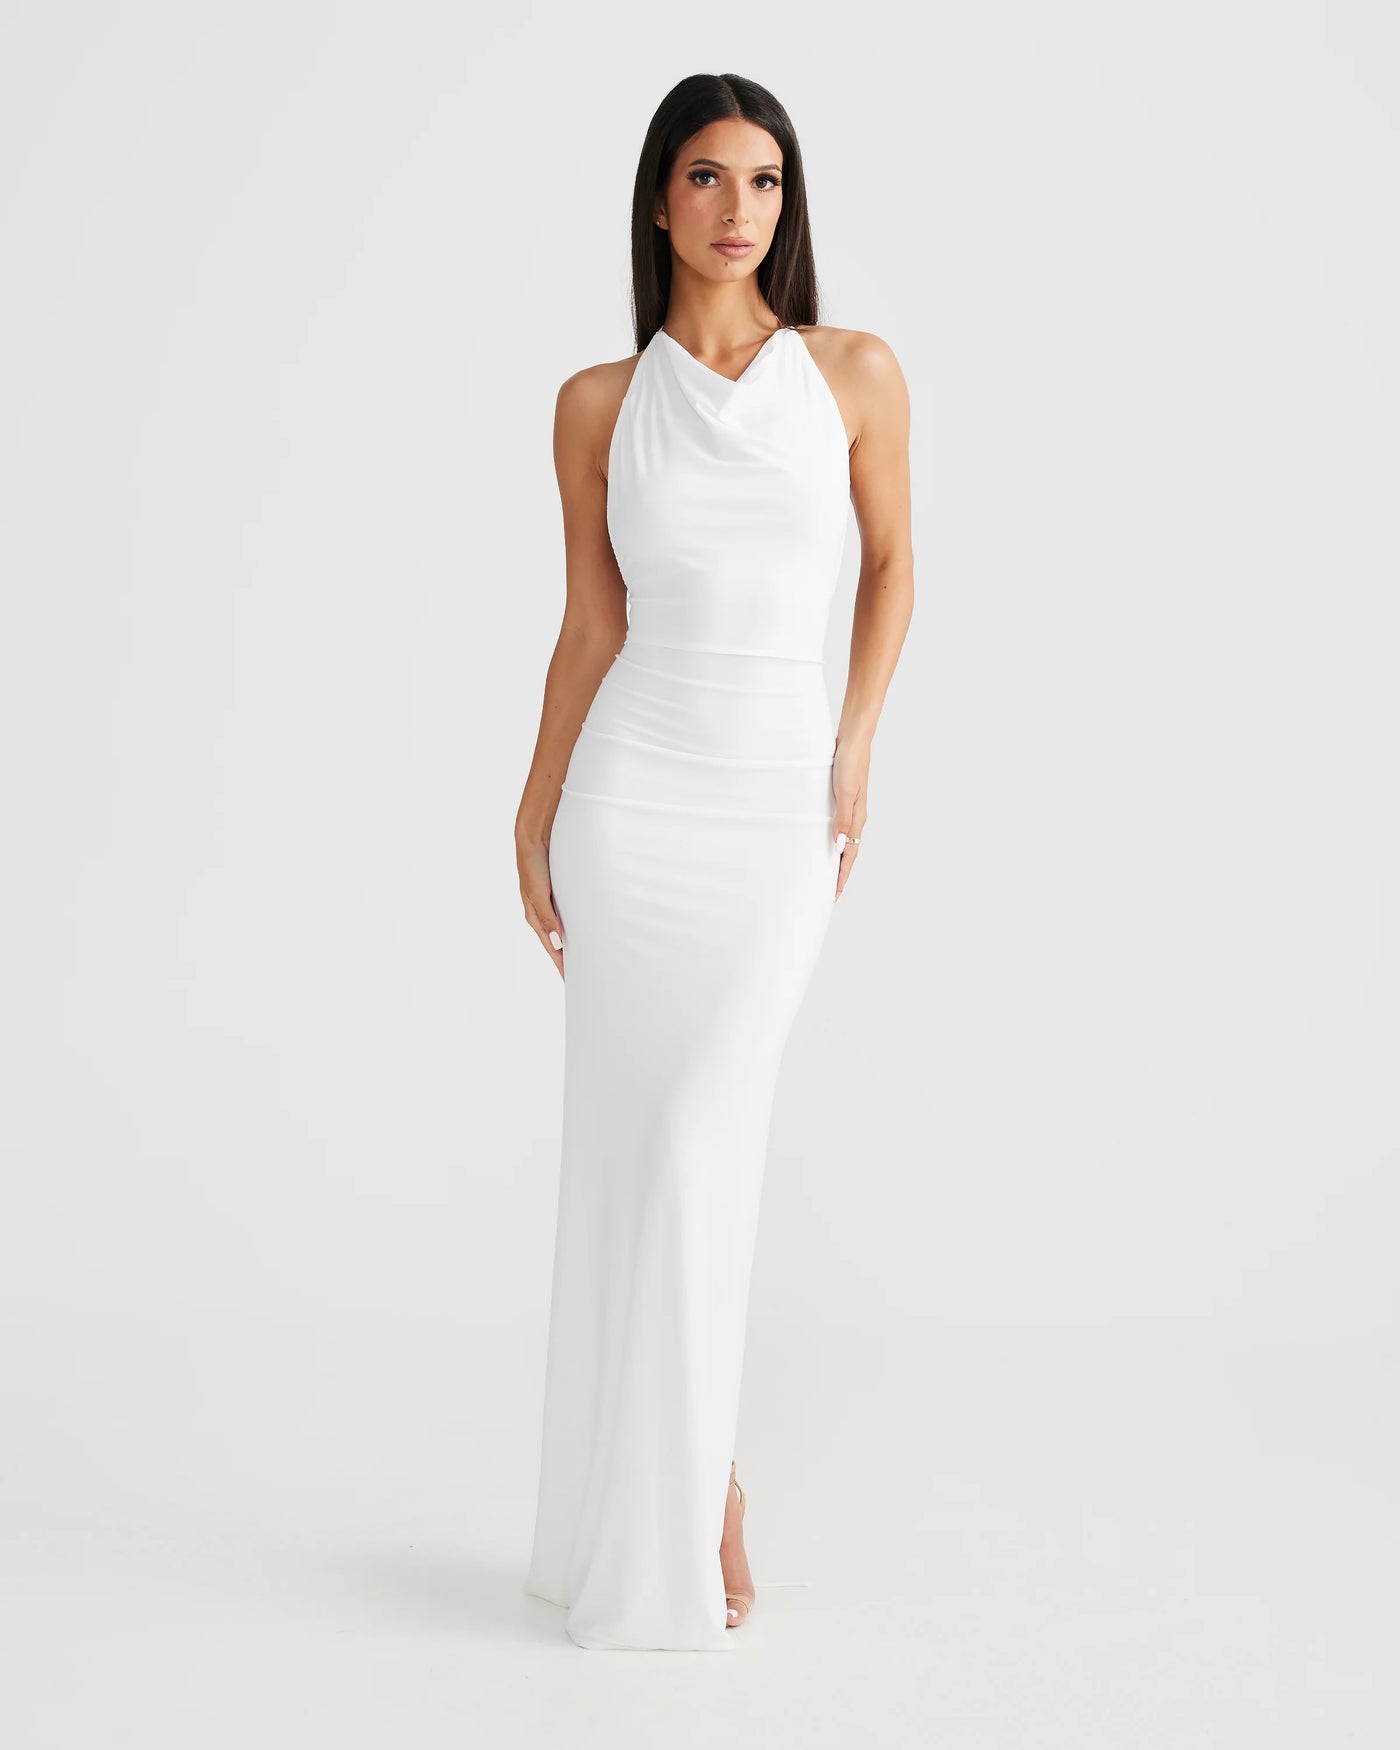 Natali Multi-Way Dress - White - SHOPJAUS - JAUS